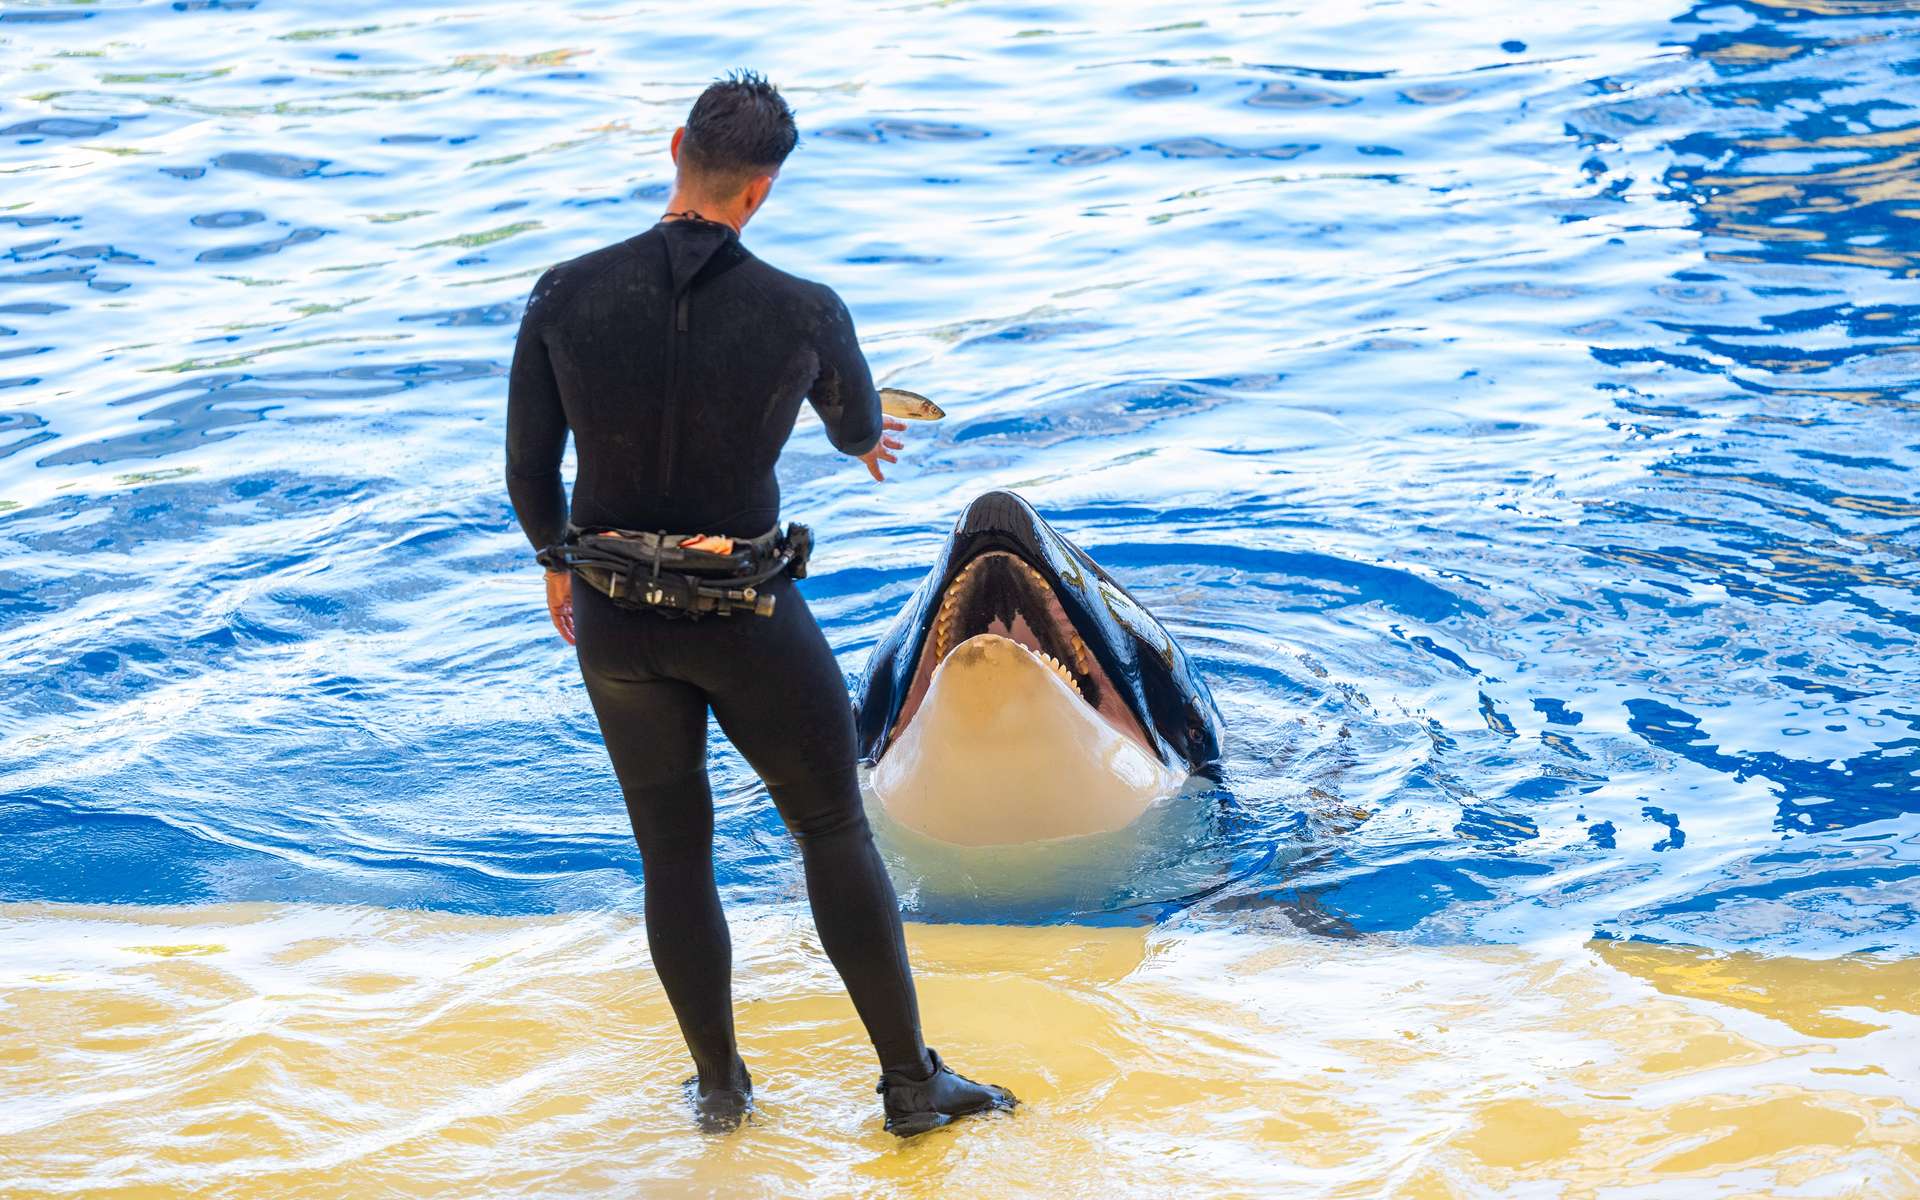 L'« exfiltration » des orques de Marineland vers le Japon dans des conditions dégradées inquiète